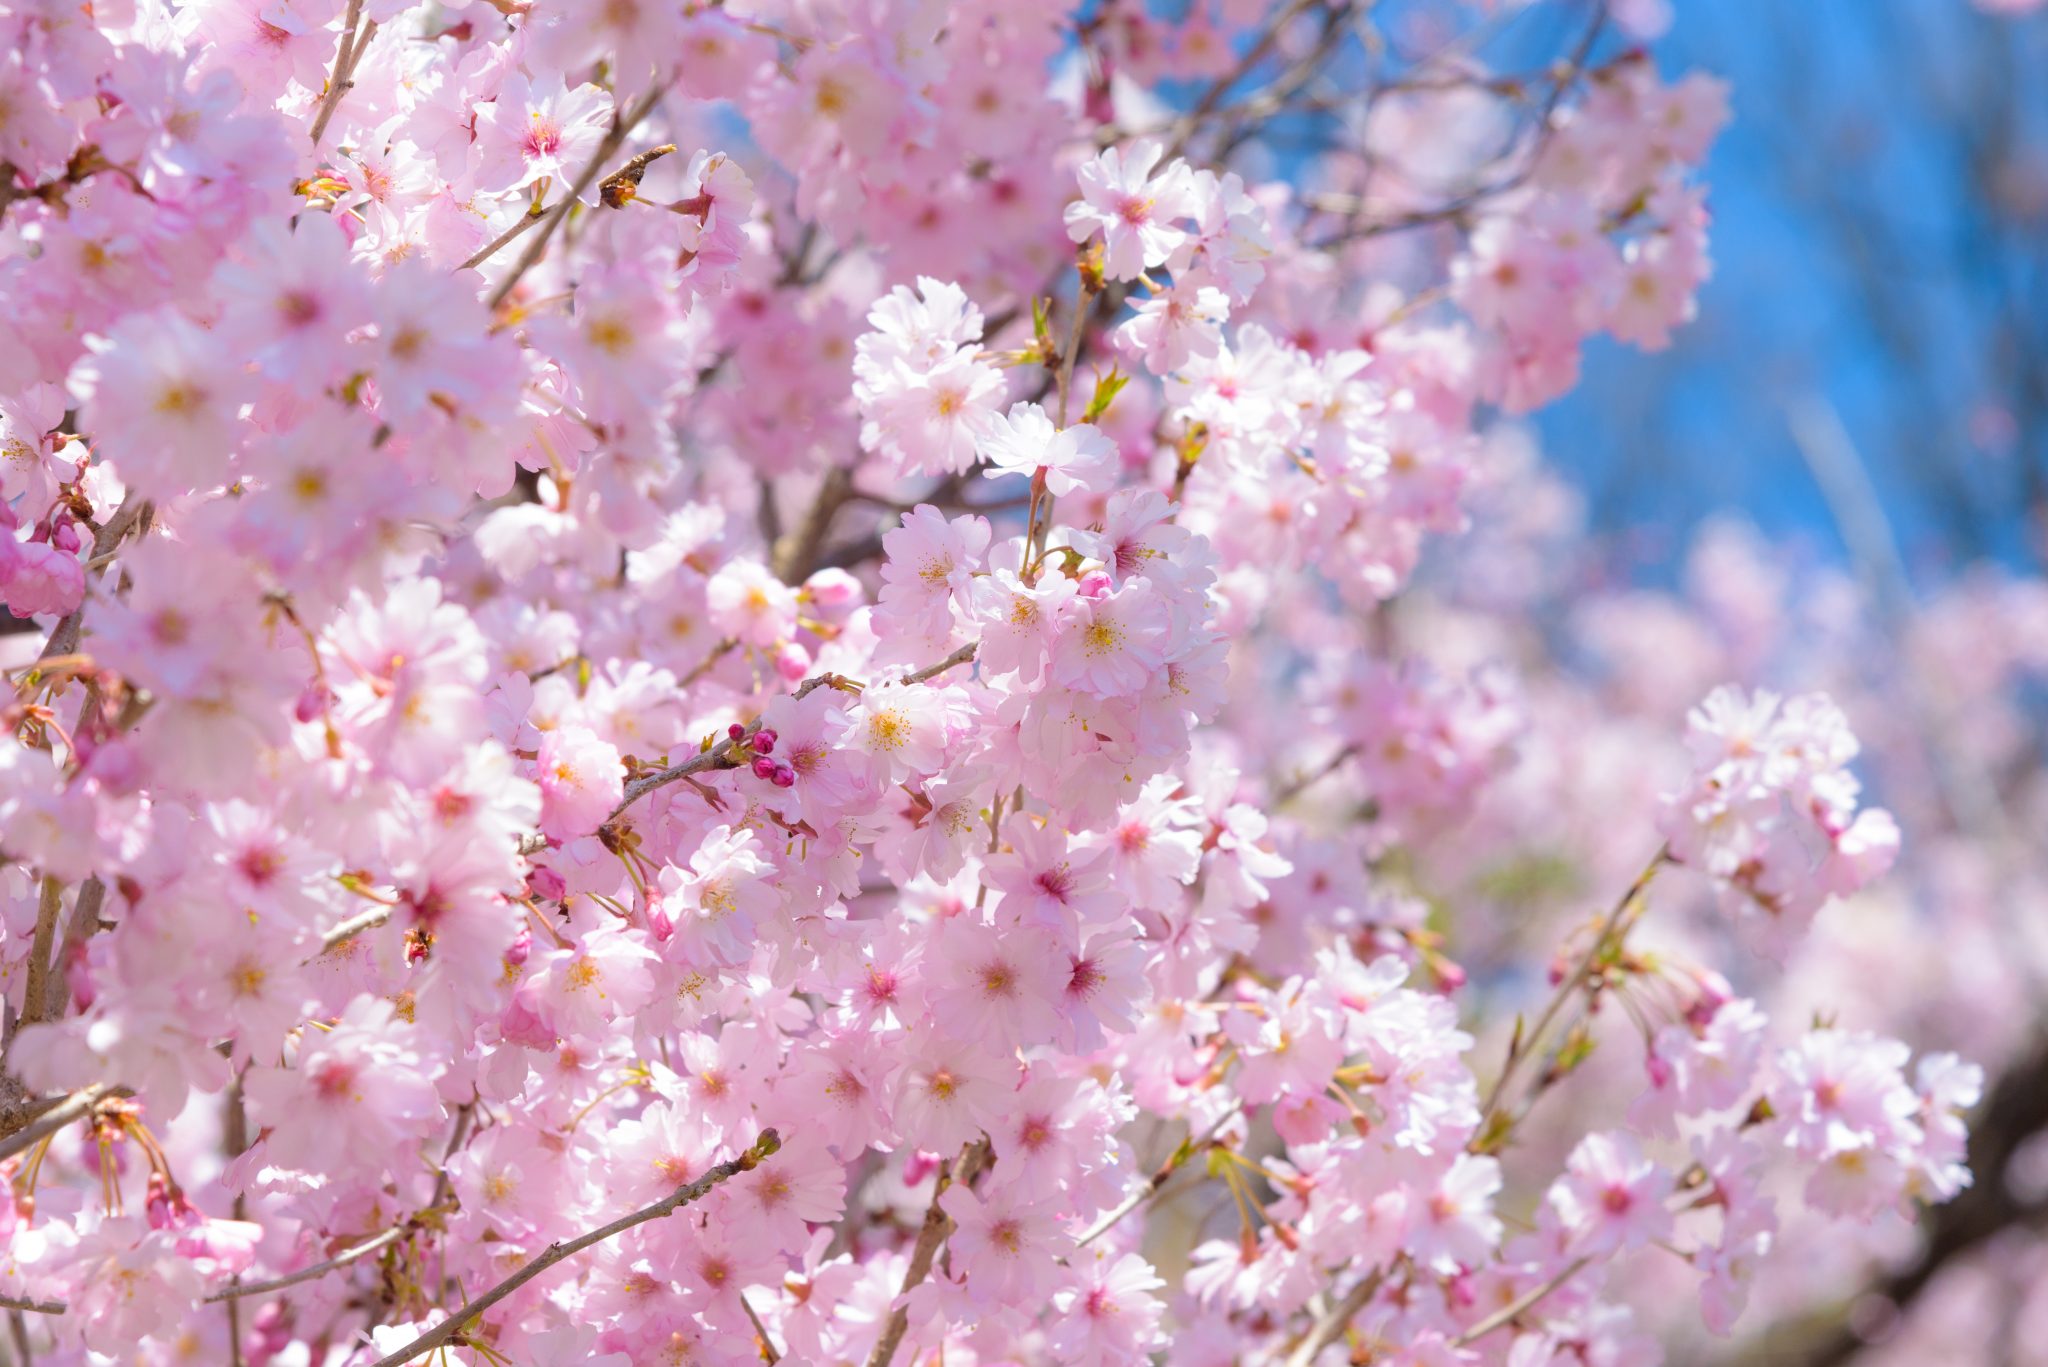 长野县的5处日本赏樱名胜| ALPICO 集团官网中关于松本的实用旅游信息。